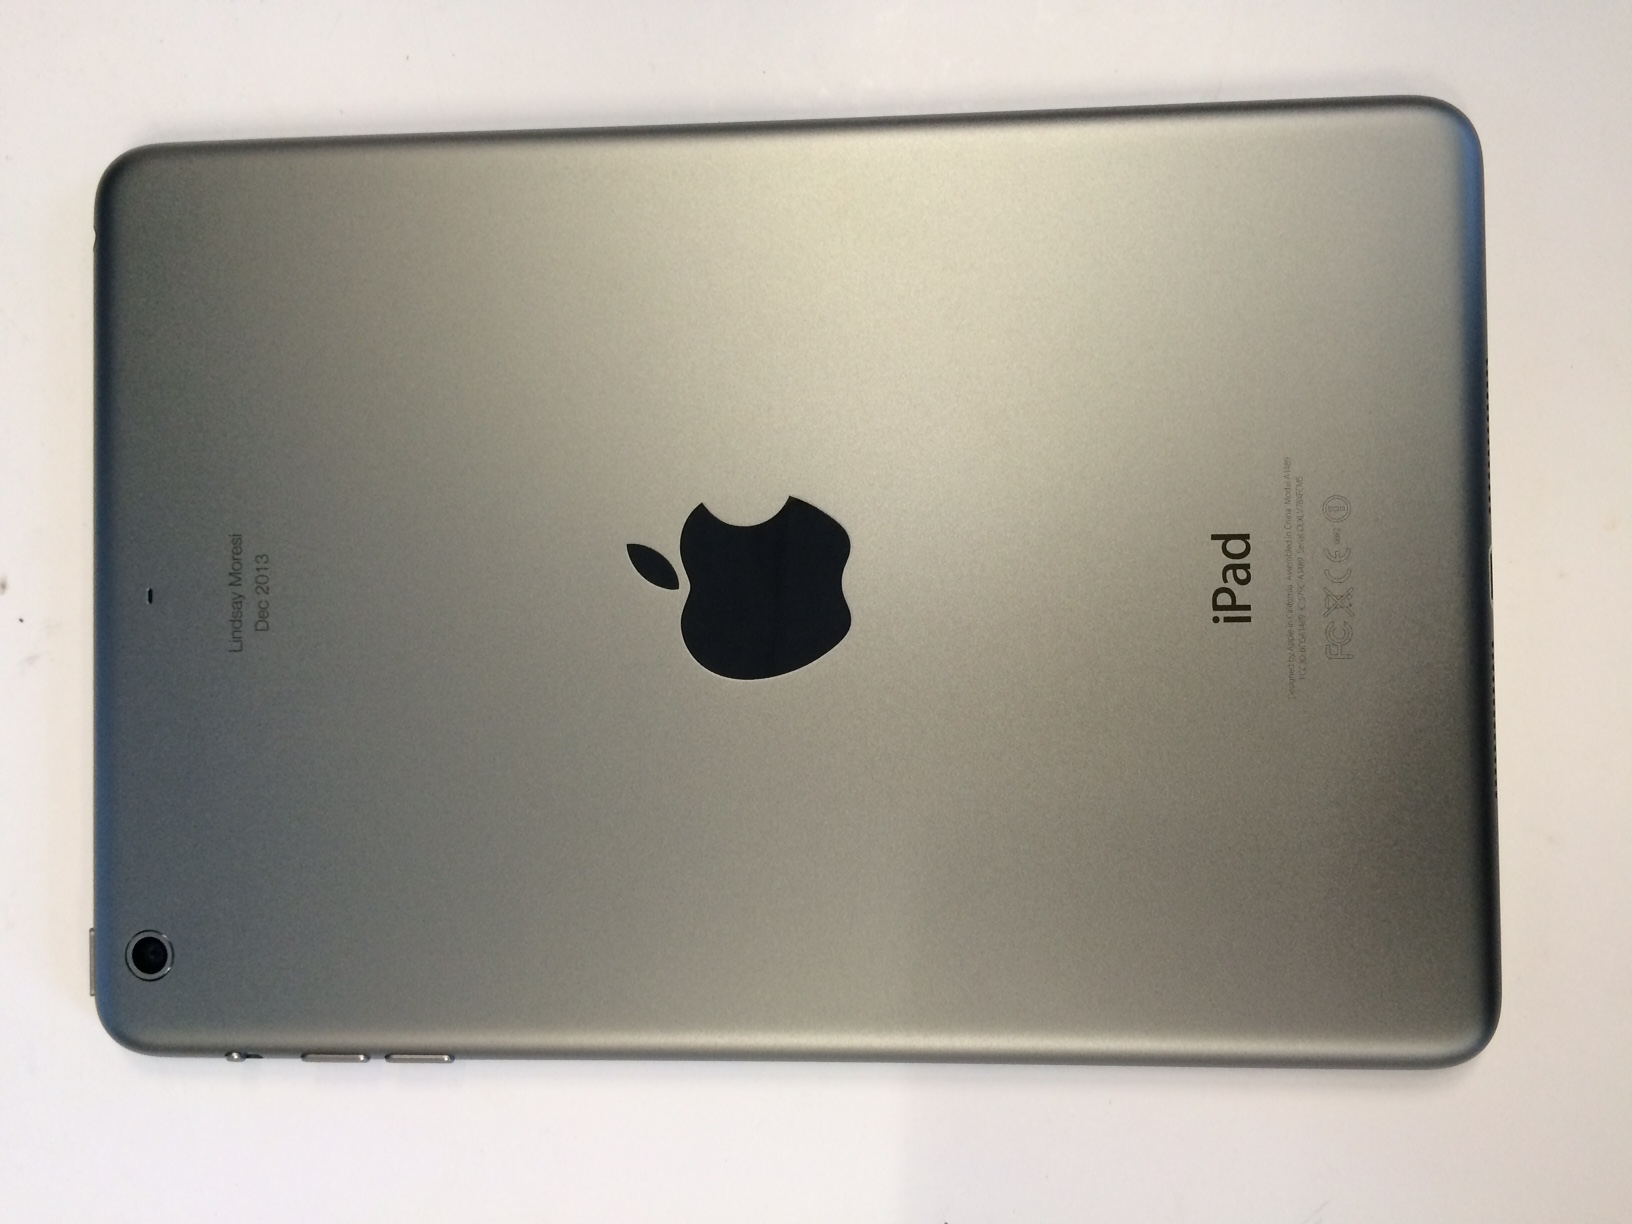 Refurbished iPad 2 mini 16GB Space Grey Wi-Fi 16GB / Space Grey